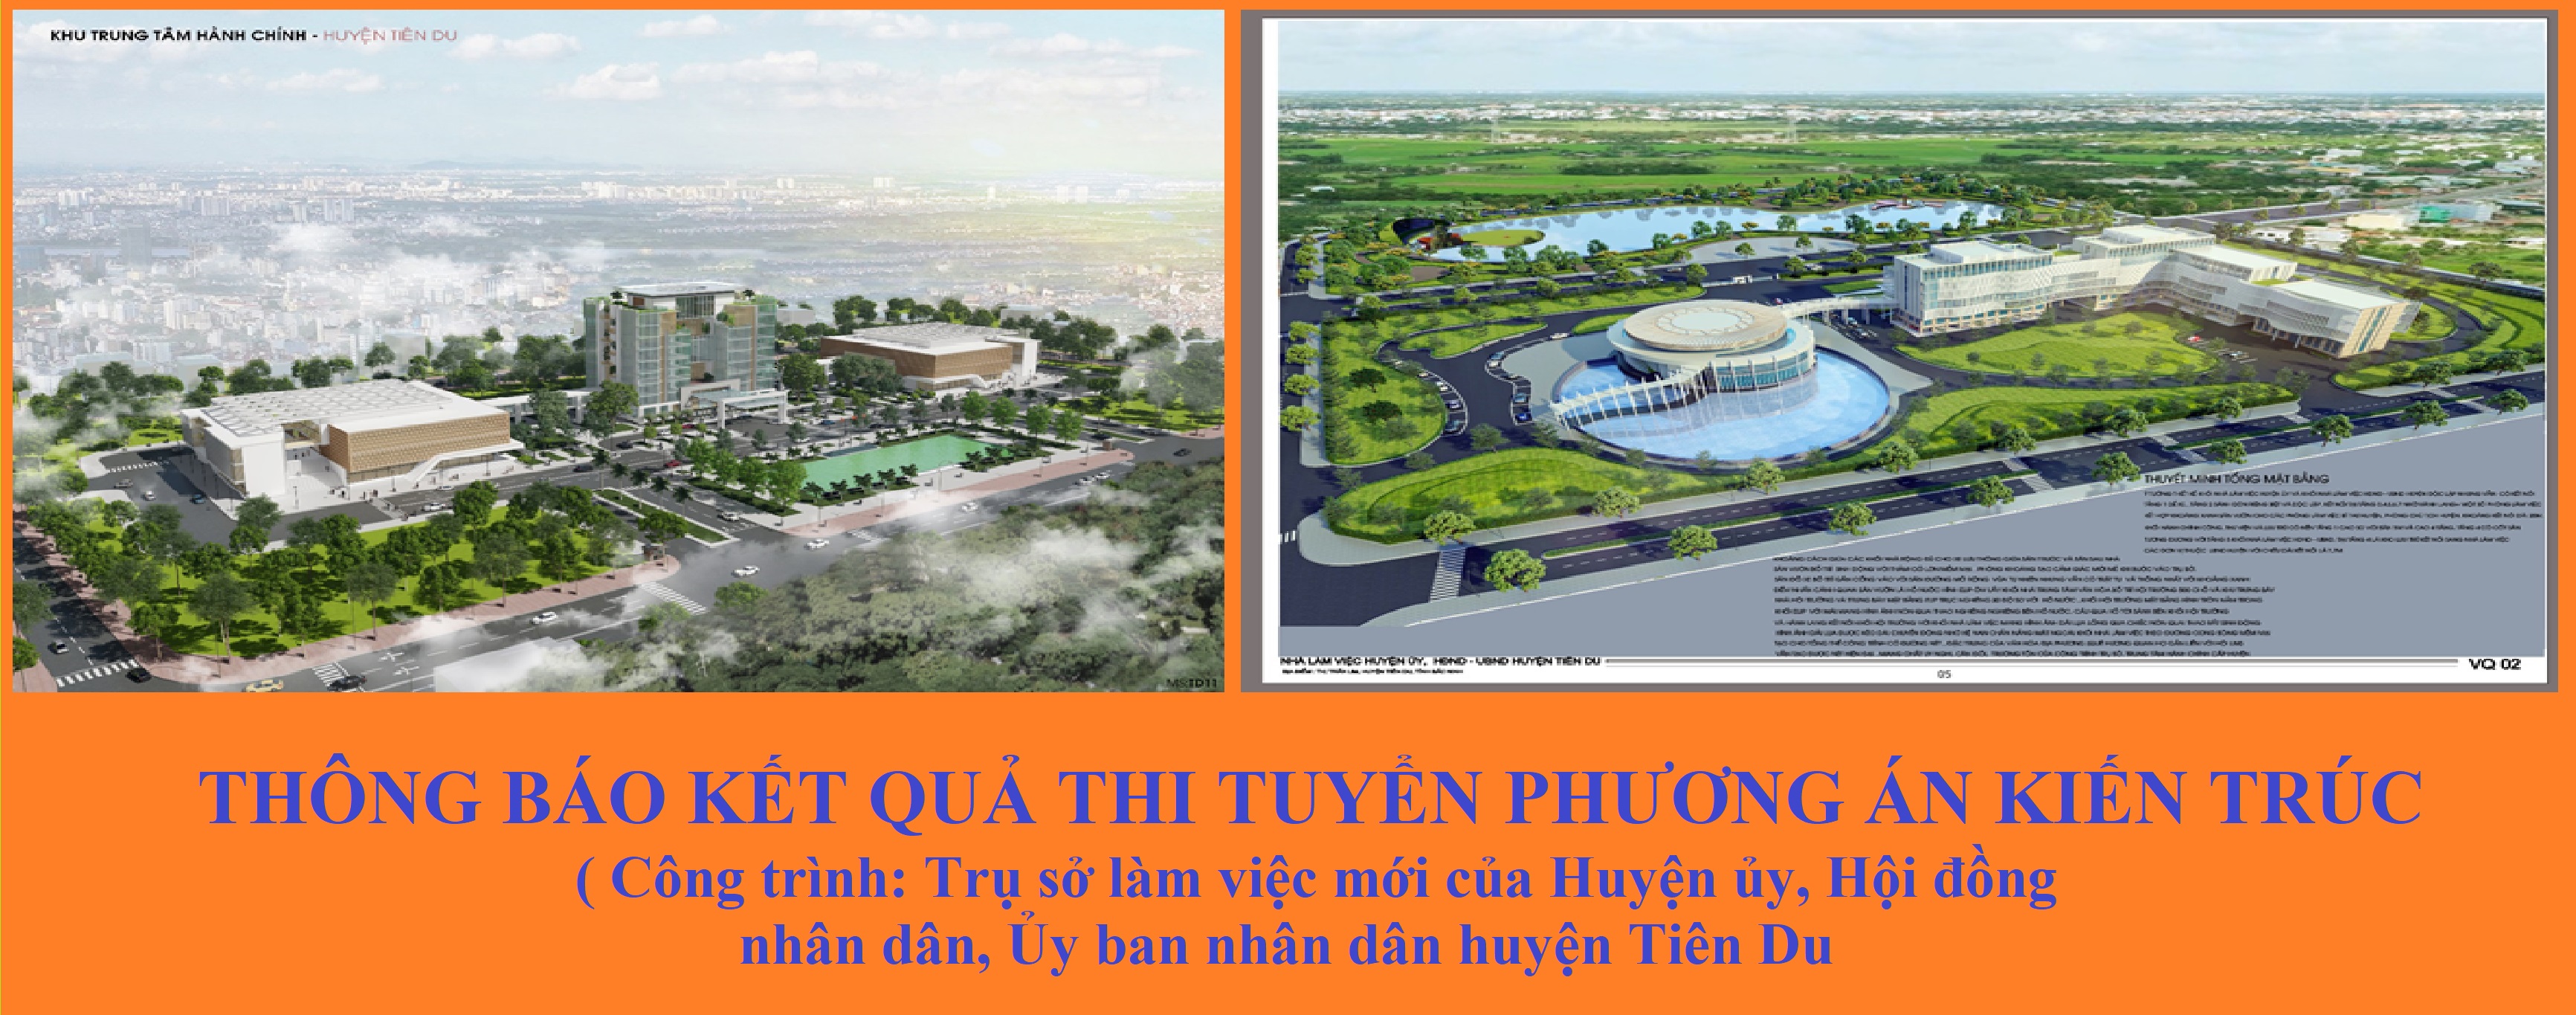 Kết quả thiết kế trụ sở làm việc mới huyện Tiên Du